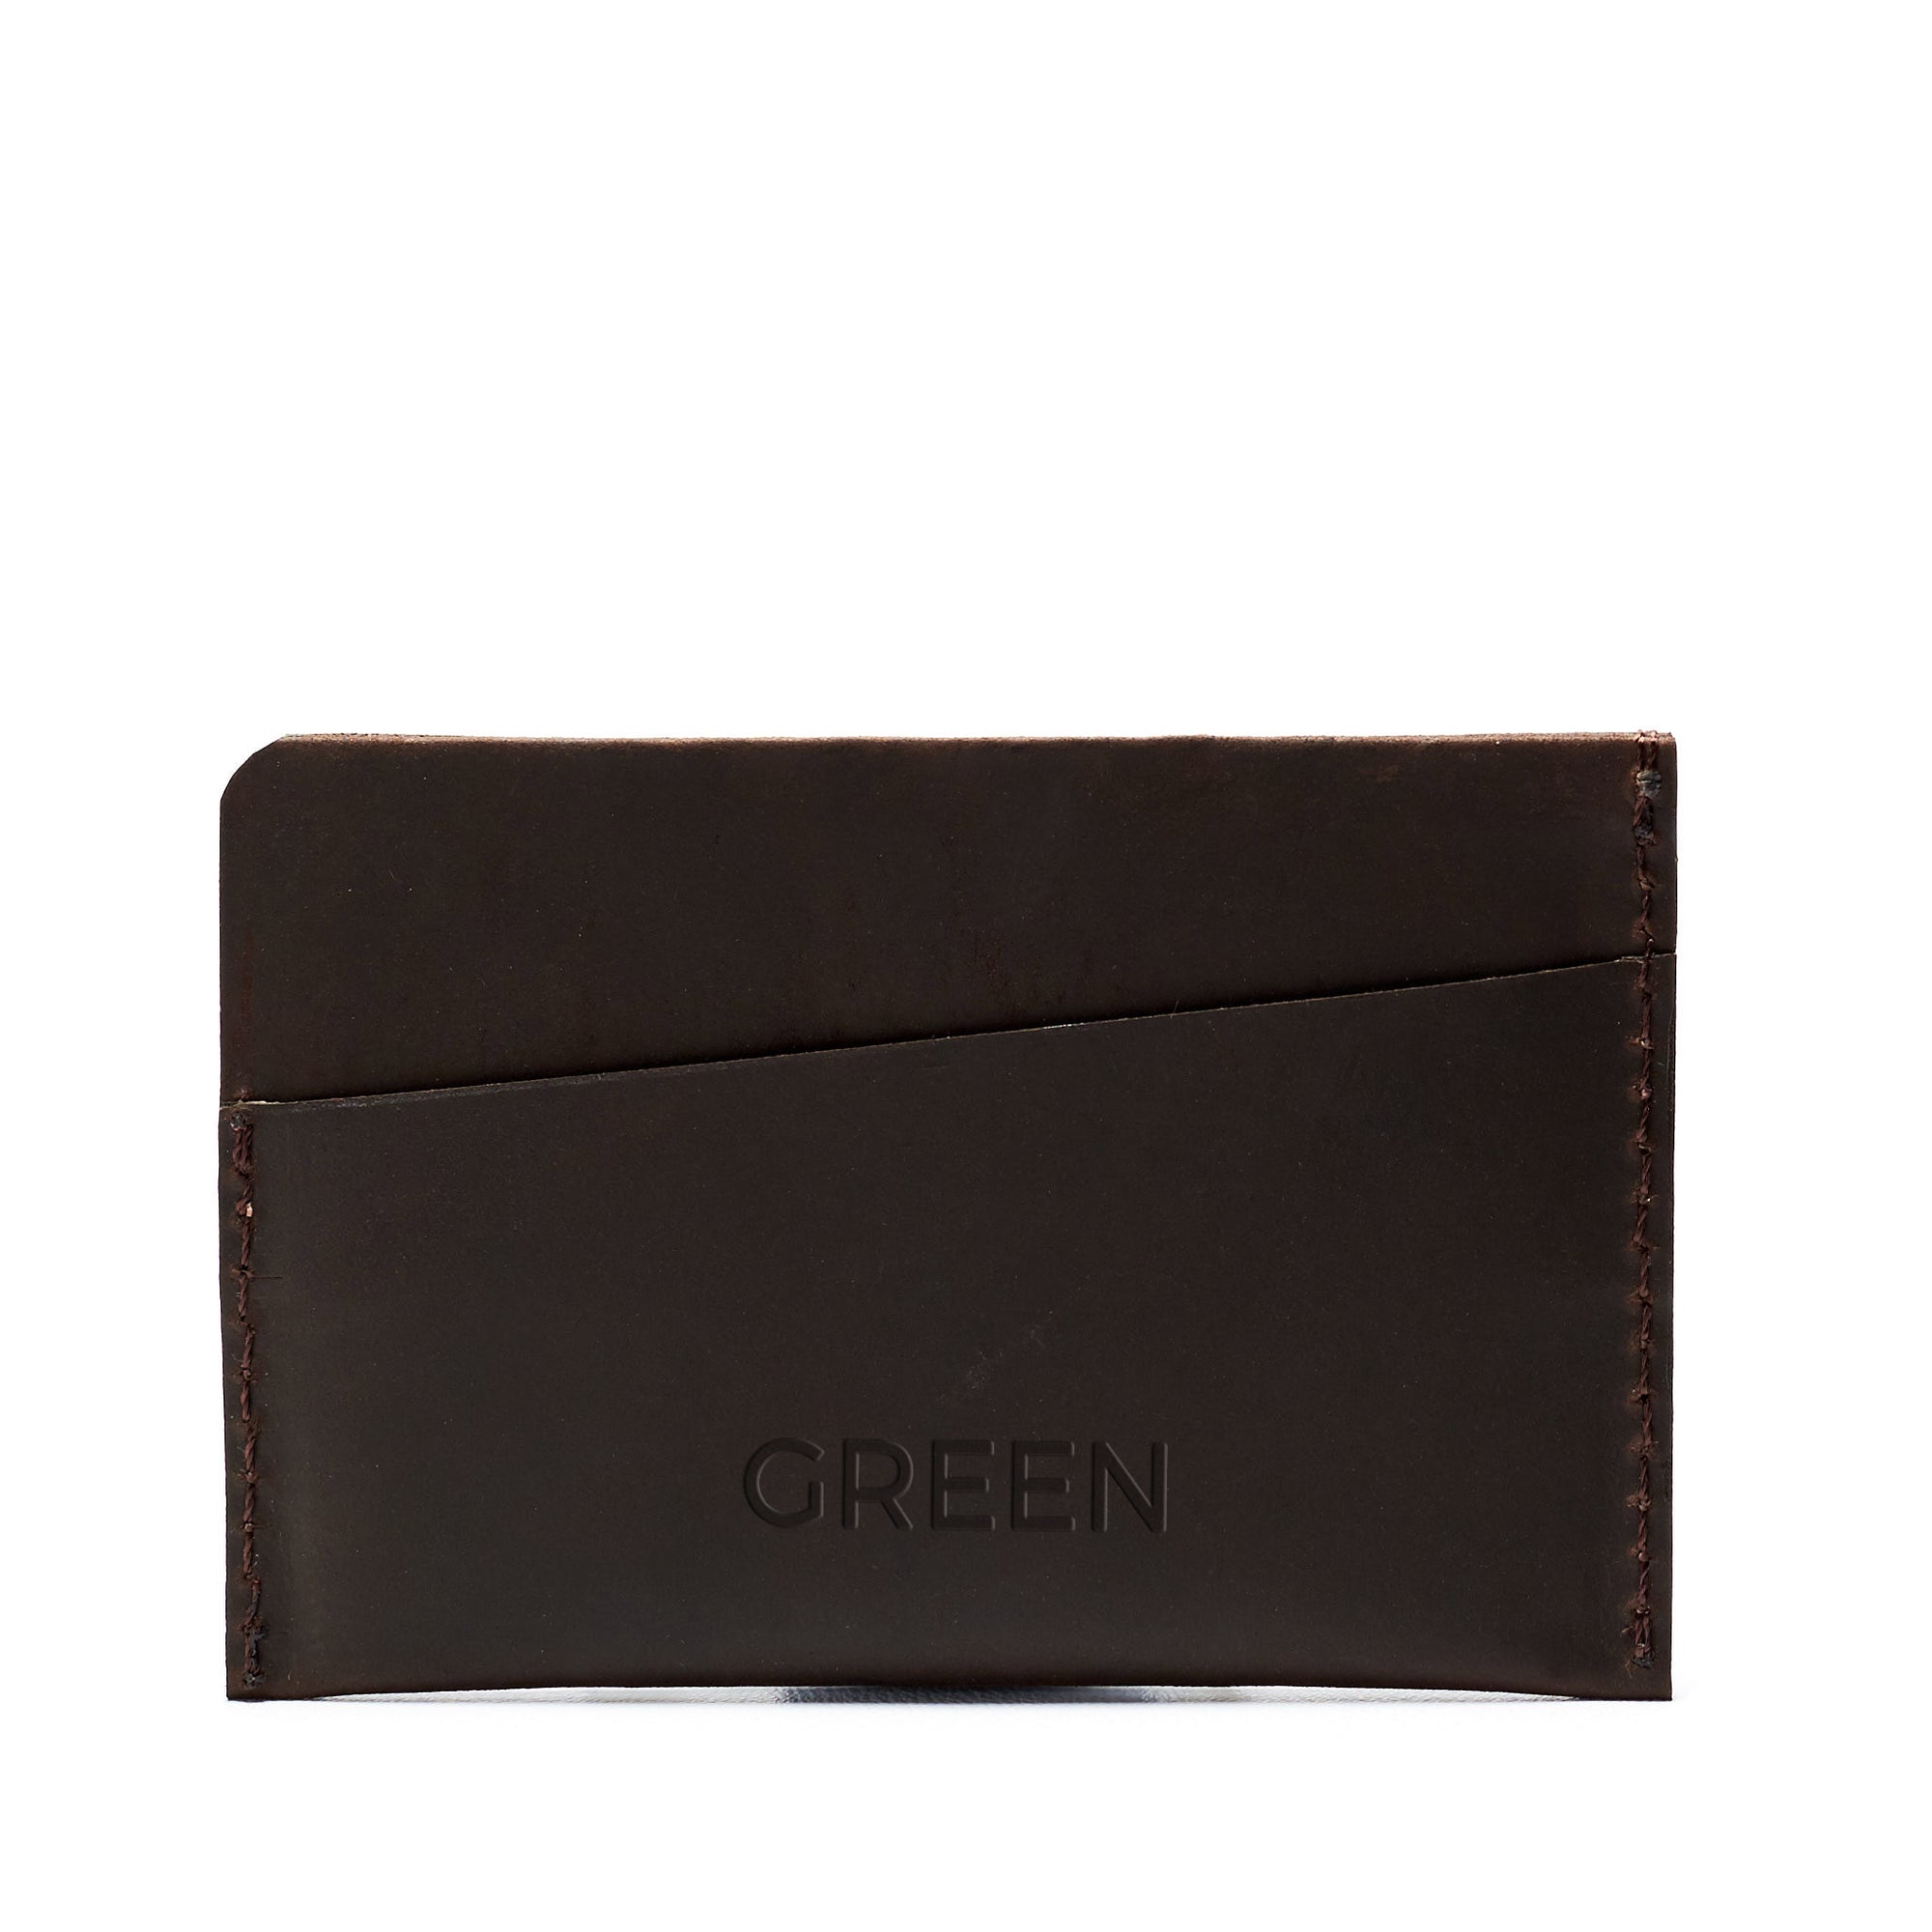 Custom engraving. Marron leather card holder, gifts for men, minimalist designer cards wallet